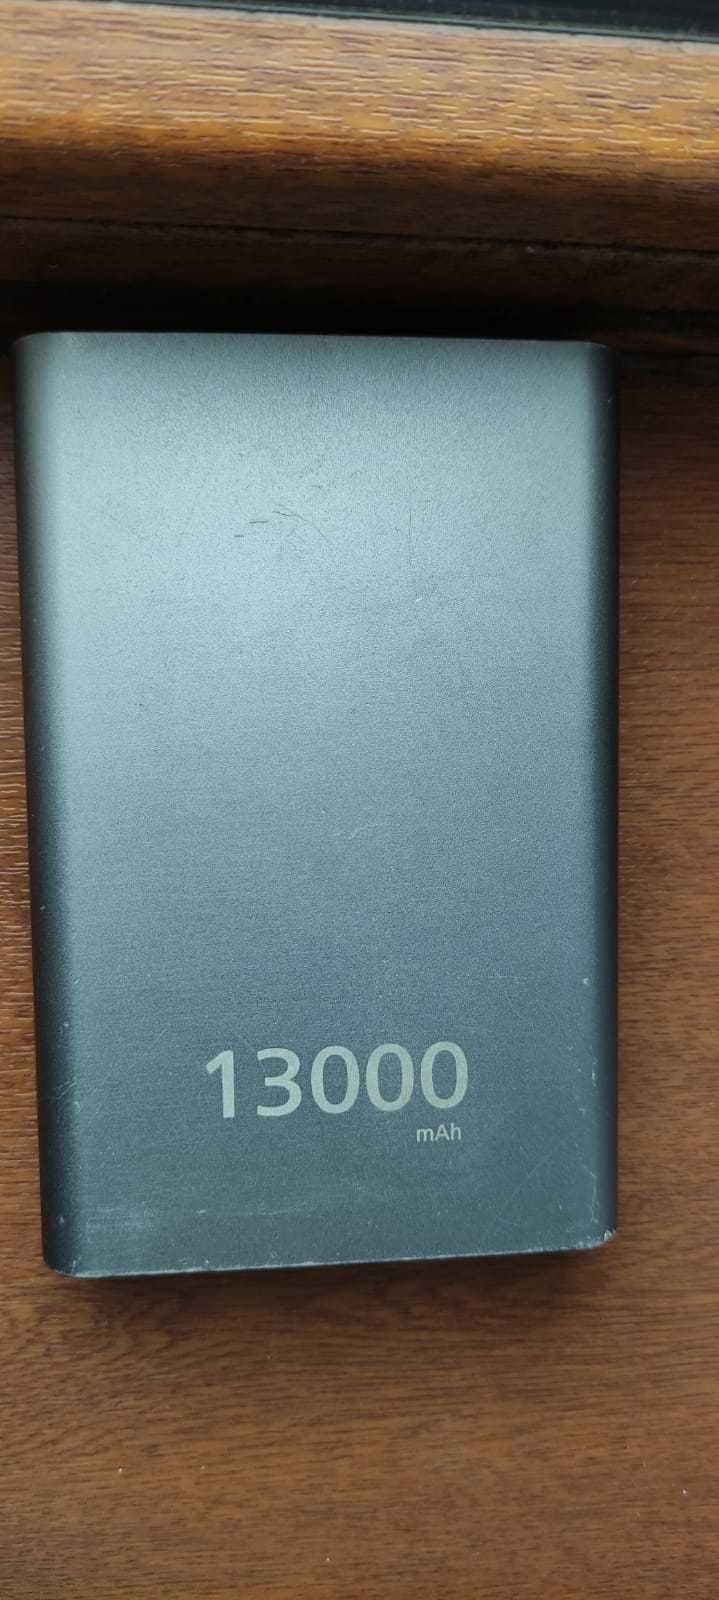 Baterie externa huawei 13000 mah